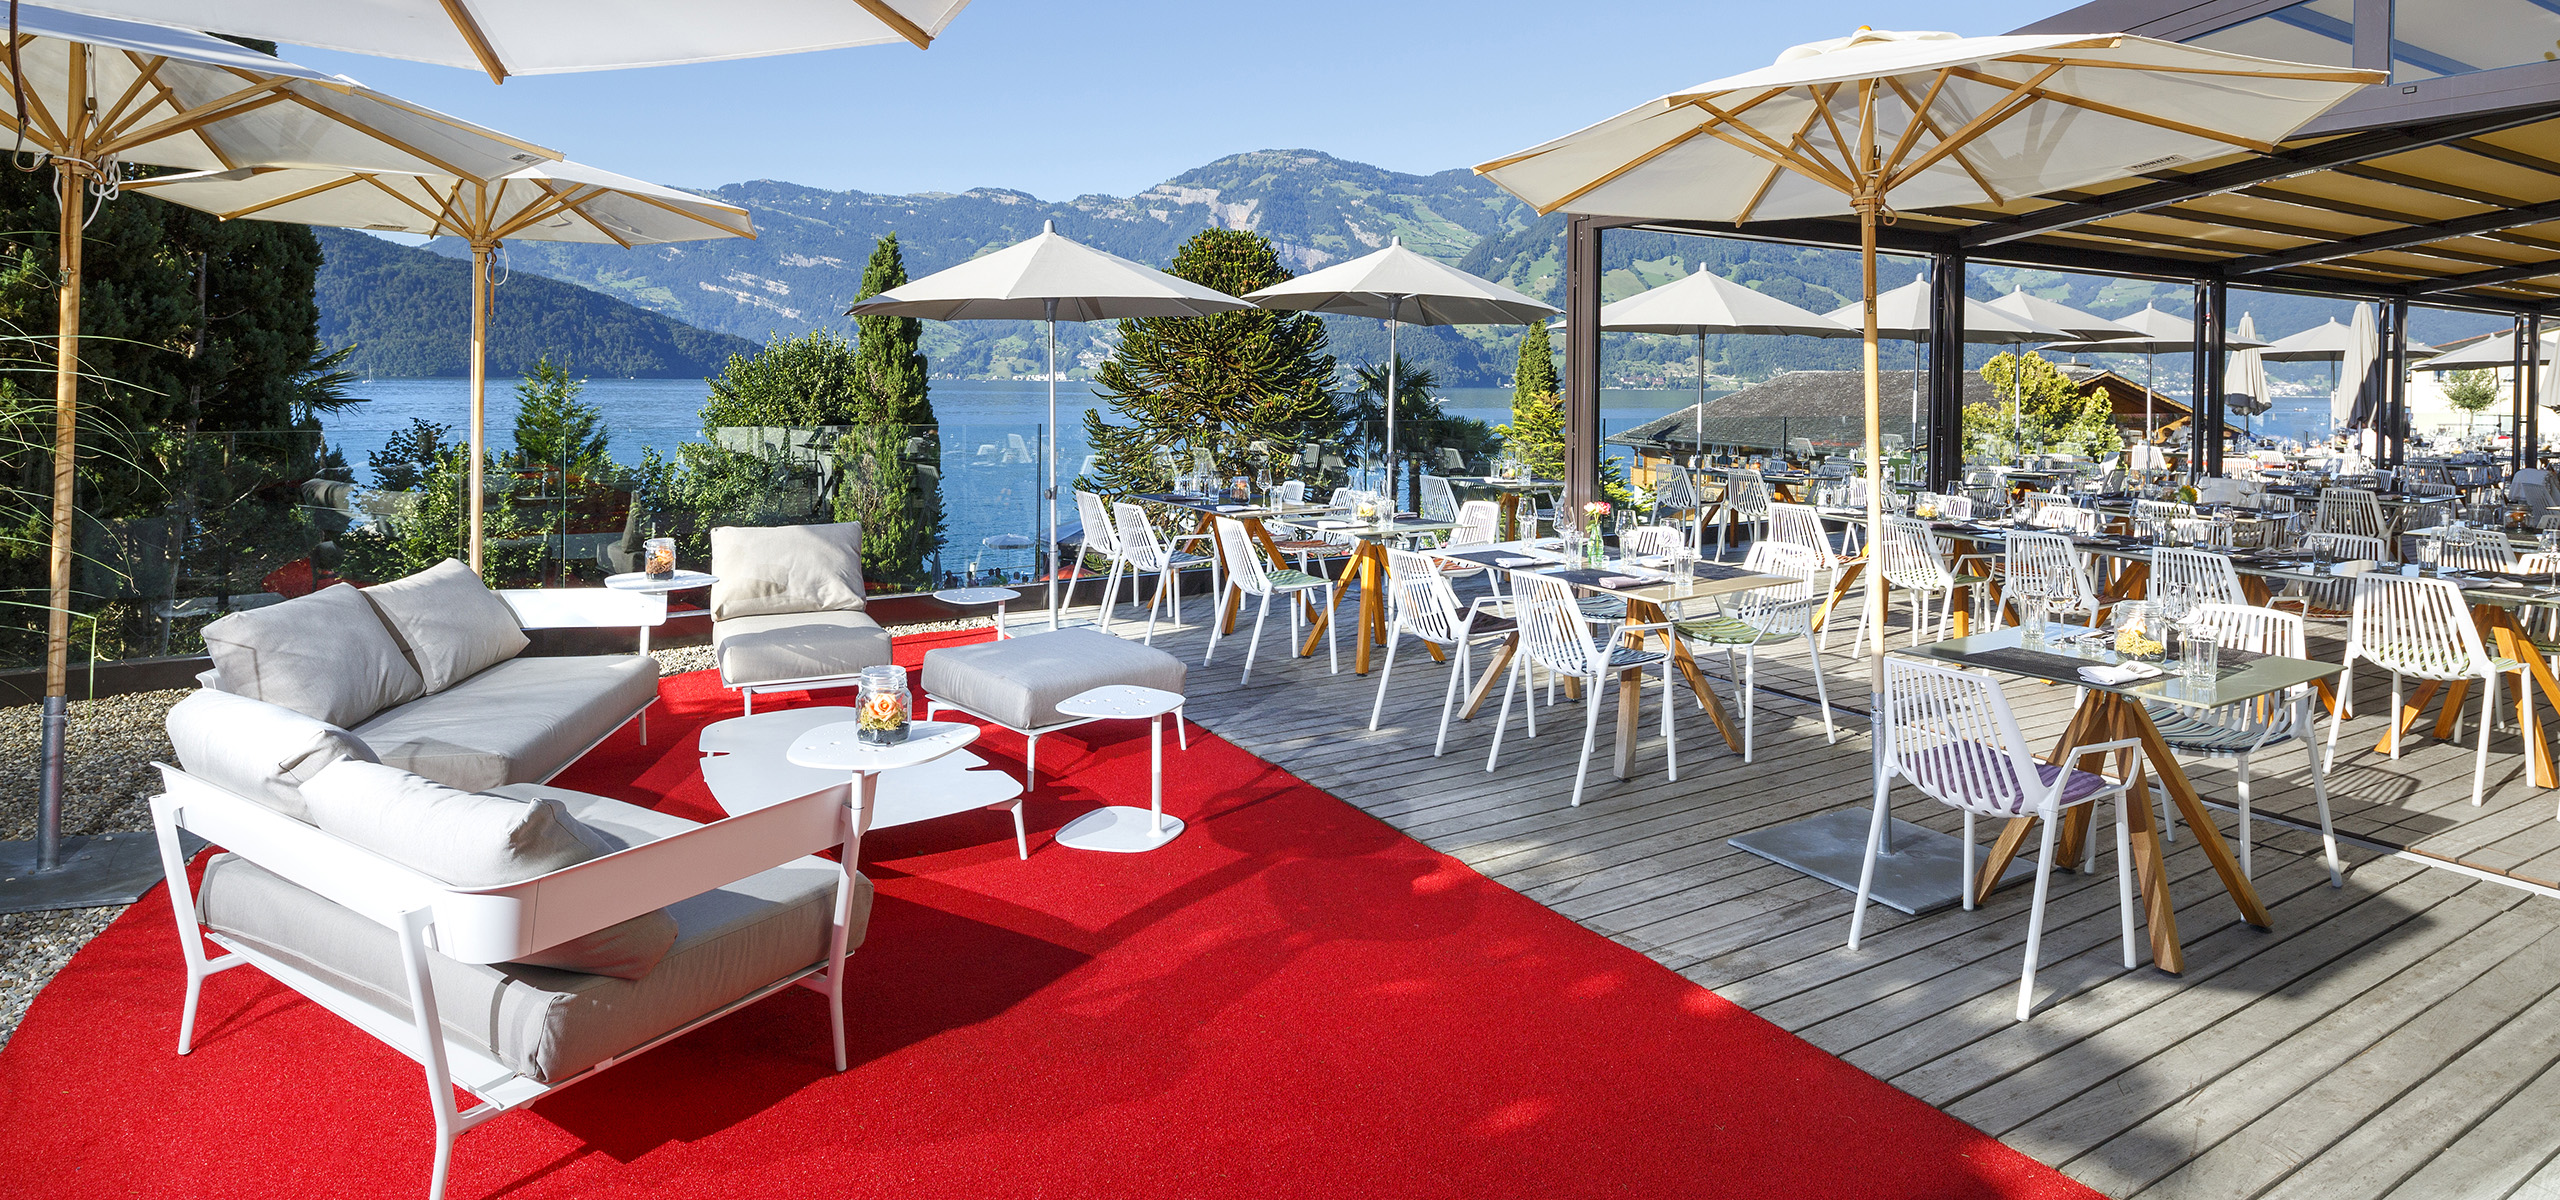 Seerausch-Hotel-Restaurant-Beckenried-Nidwalden-03